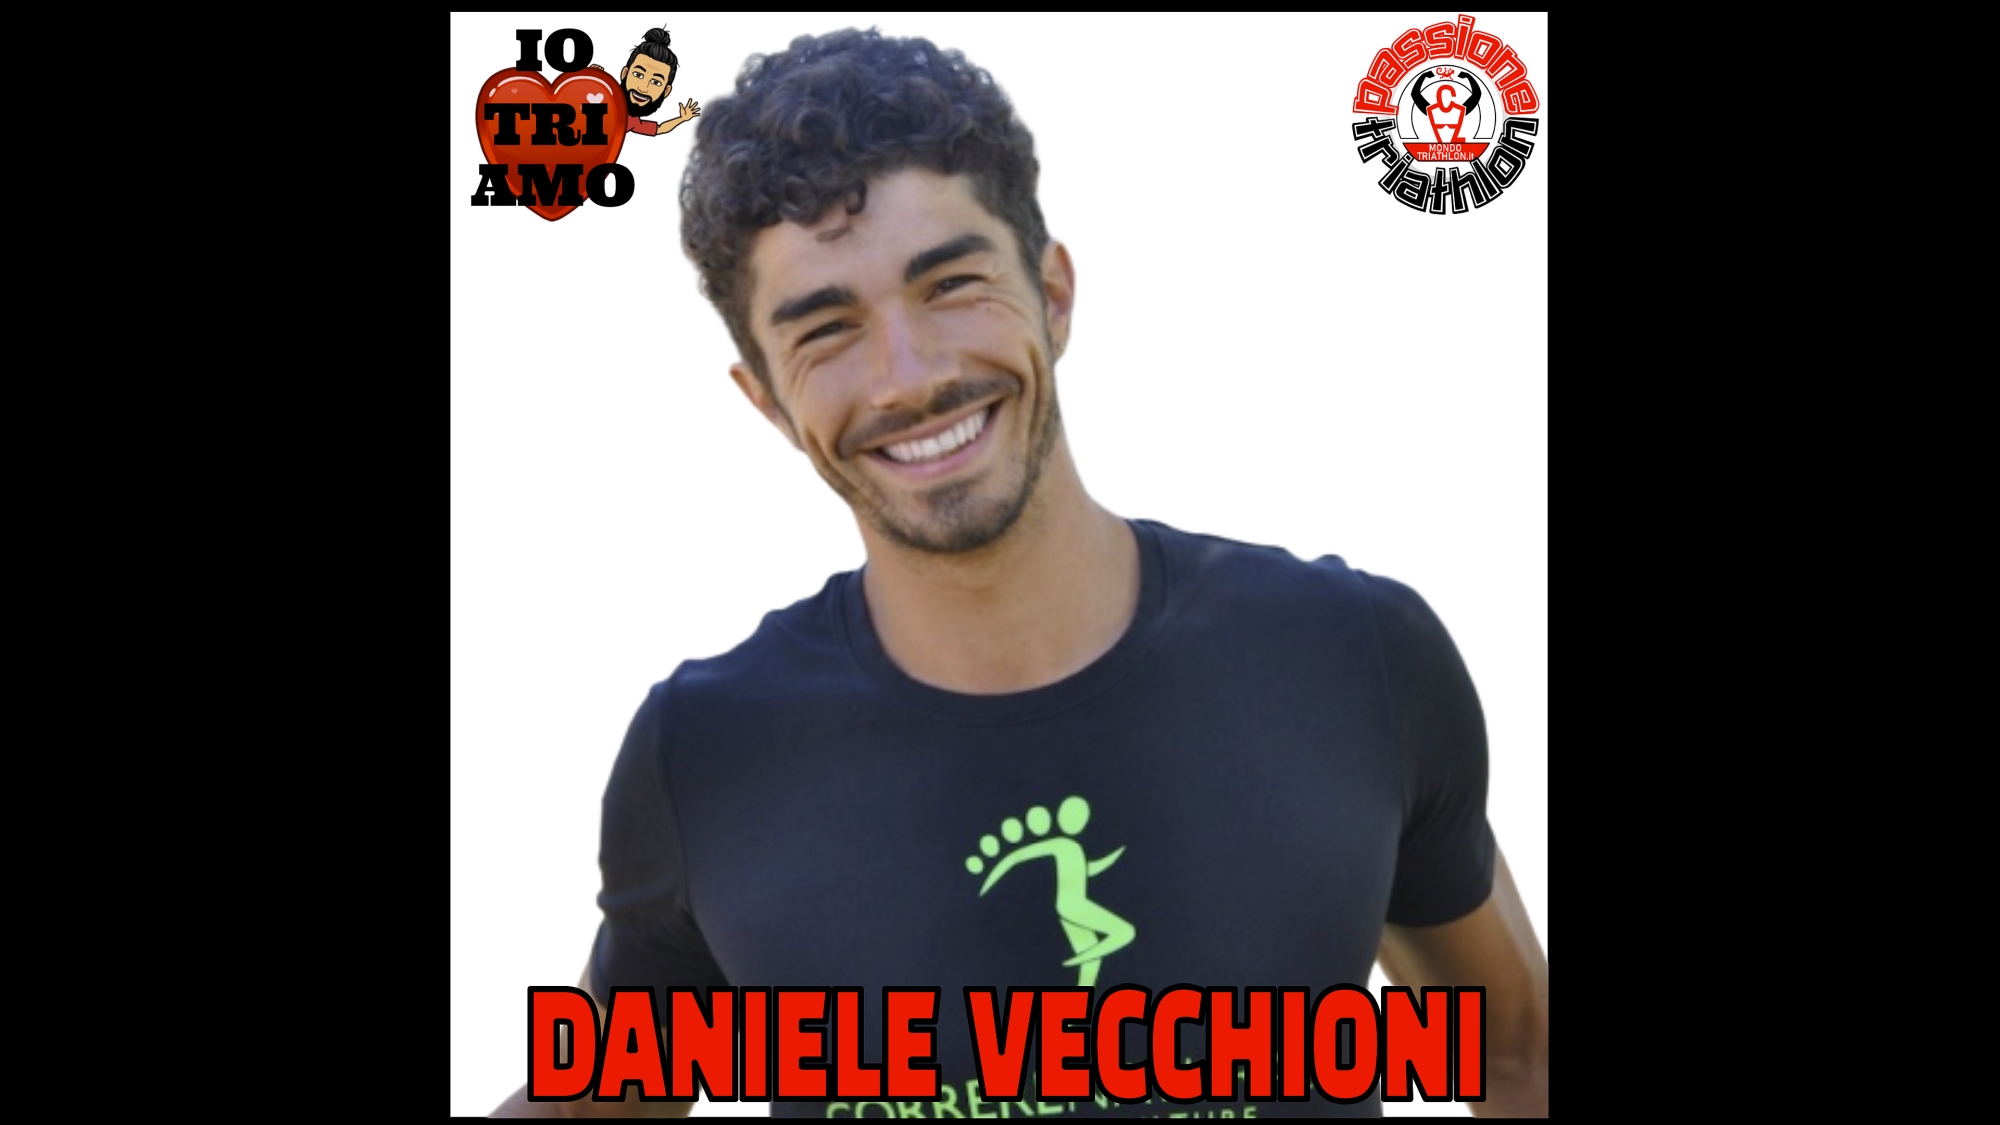 Daniele Vecchioni Passione Triathlon